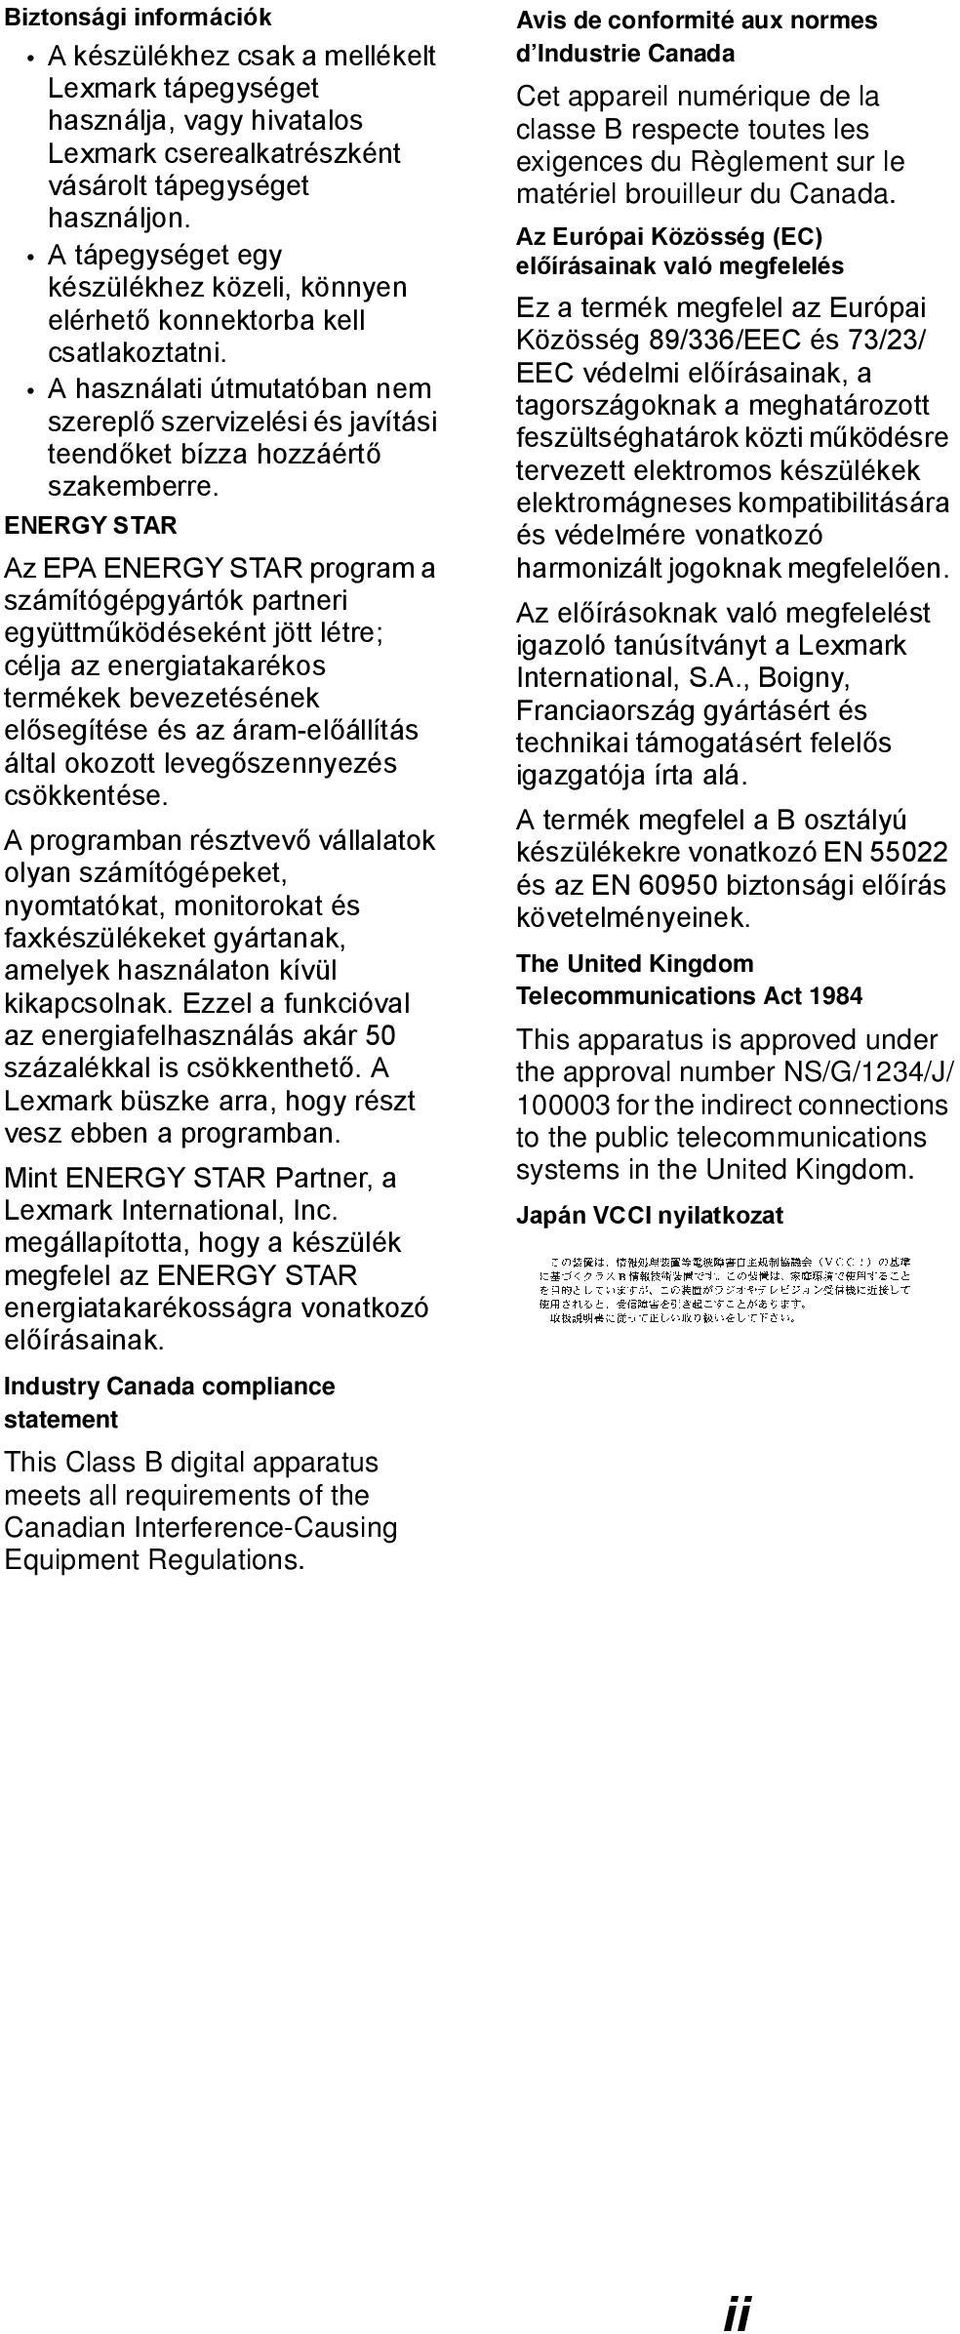 ENERGY STAR Az EPA ENERGY STAR program a számítógépgyártók partneri együttműködéseként jött létre; célja az energiatakarékos termékek bevezetésének elősegítése és az áram-előállítás által okozott